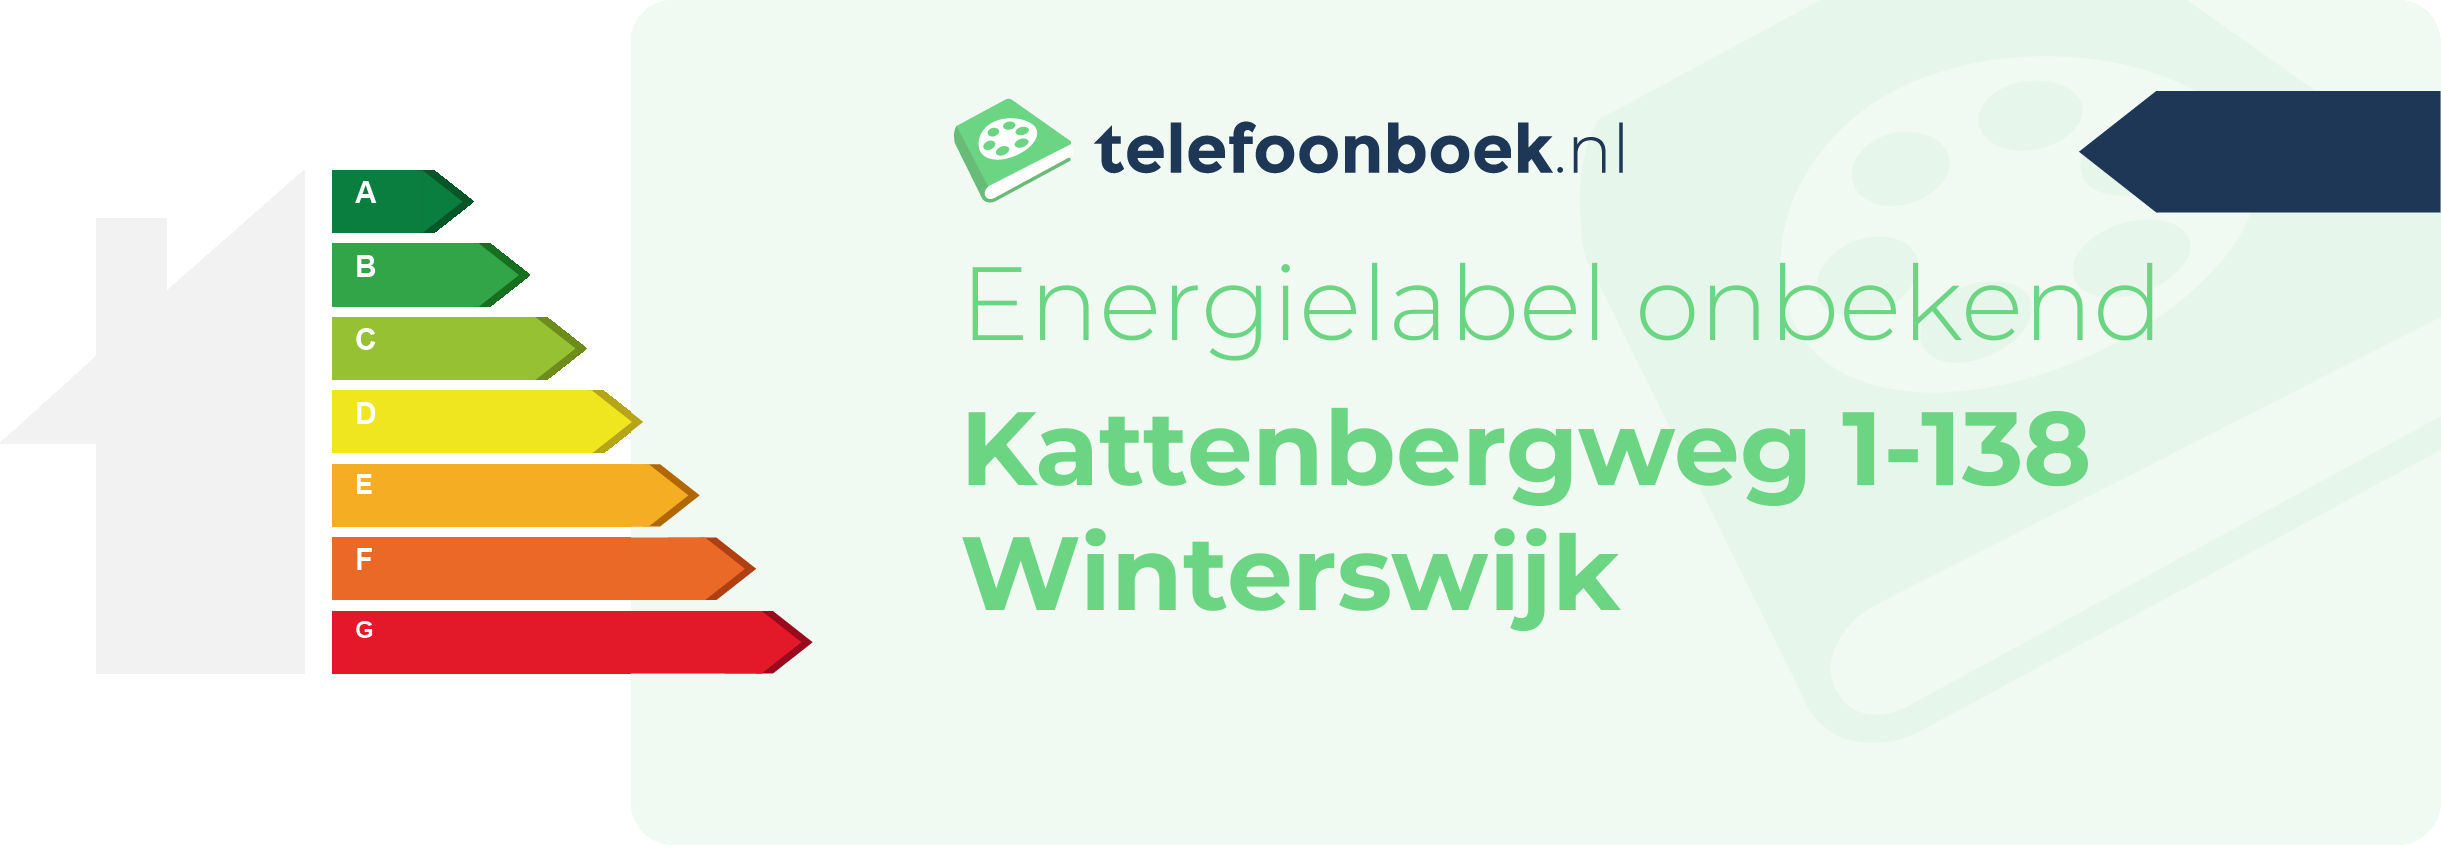 Energielabel Kattenbergweg 1-138 Winterswijk